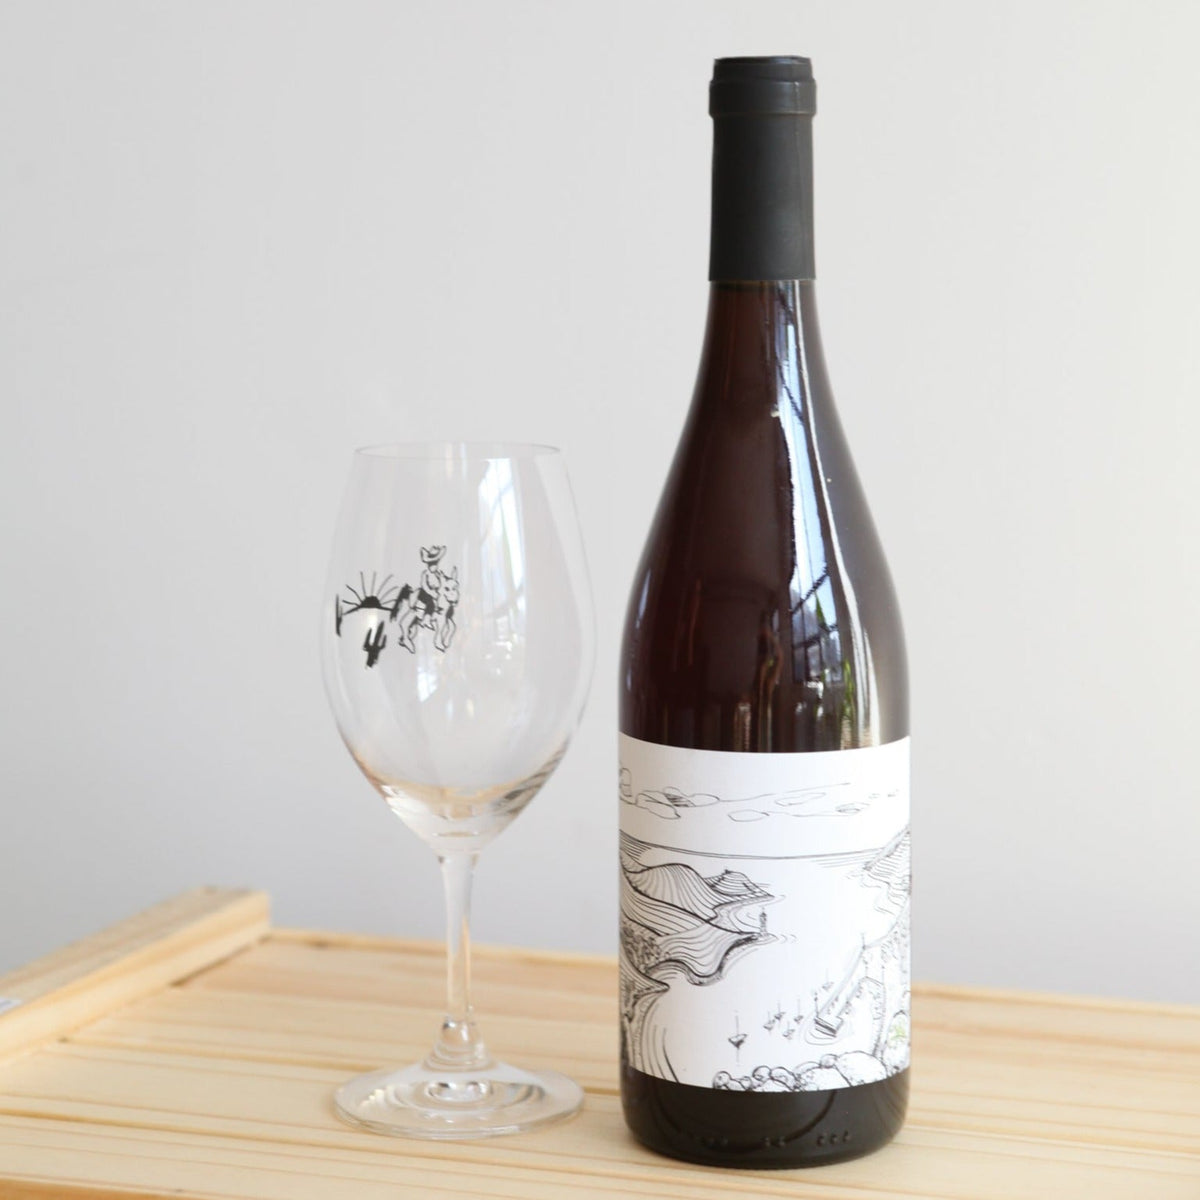 Parellatxa 2020 - Rouge - Artesano Vintners - Le vin dans les voiles